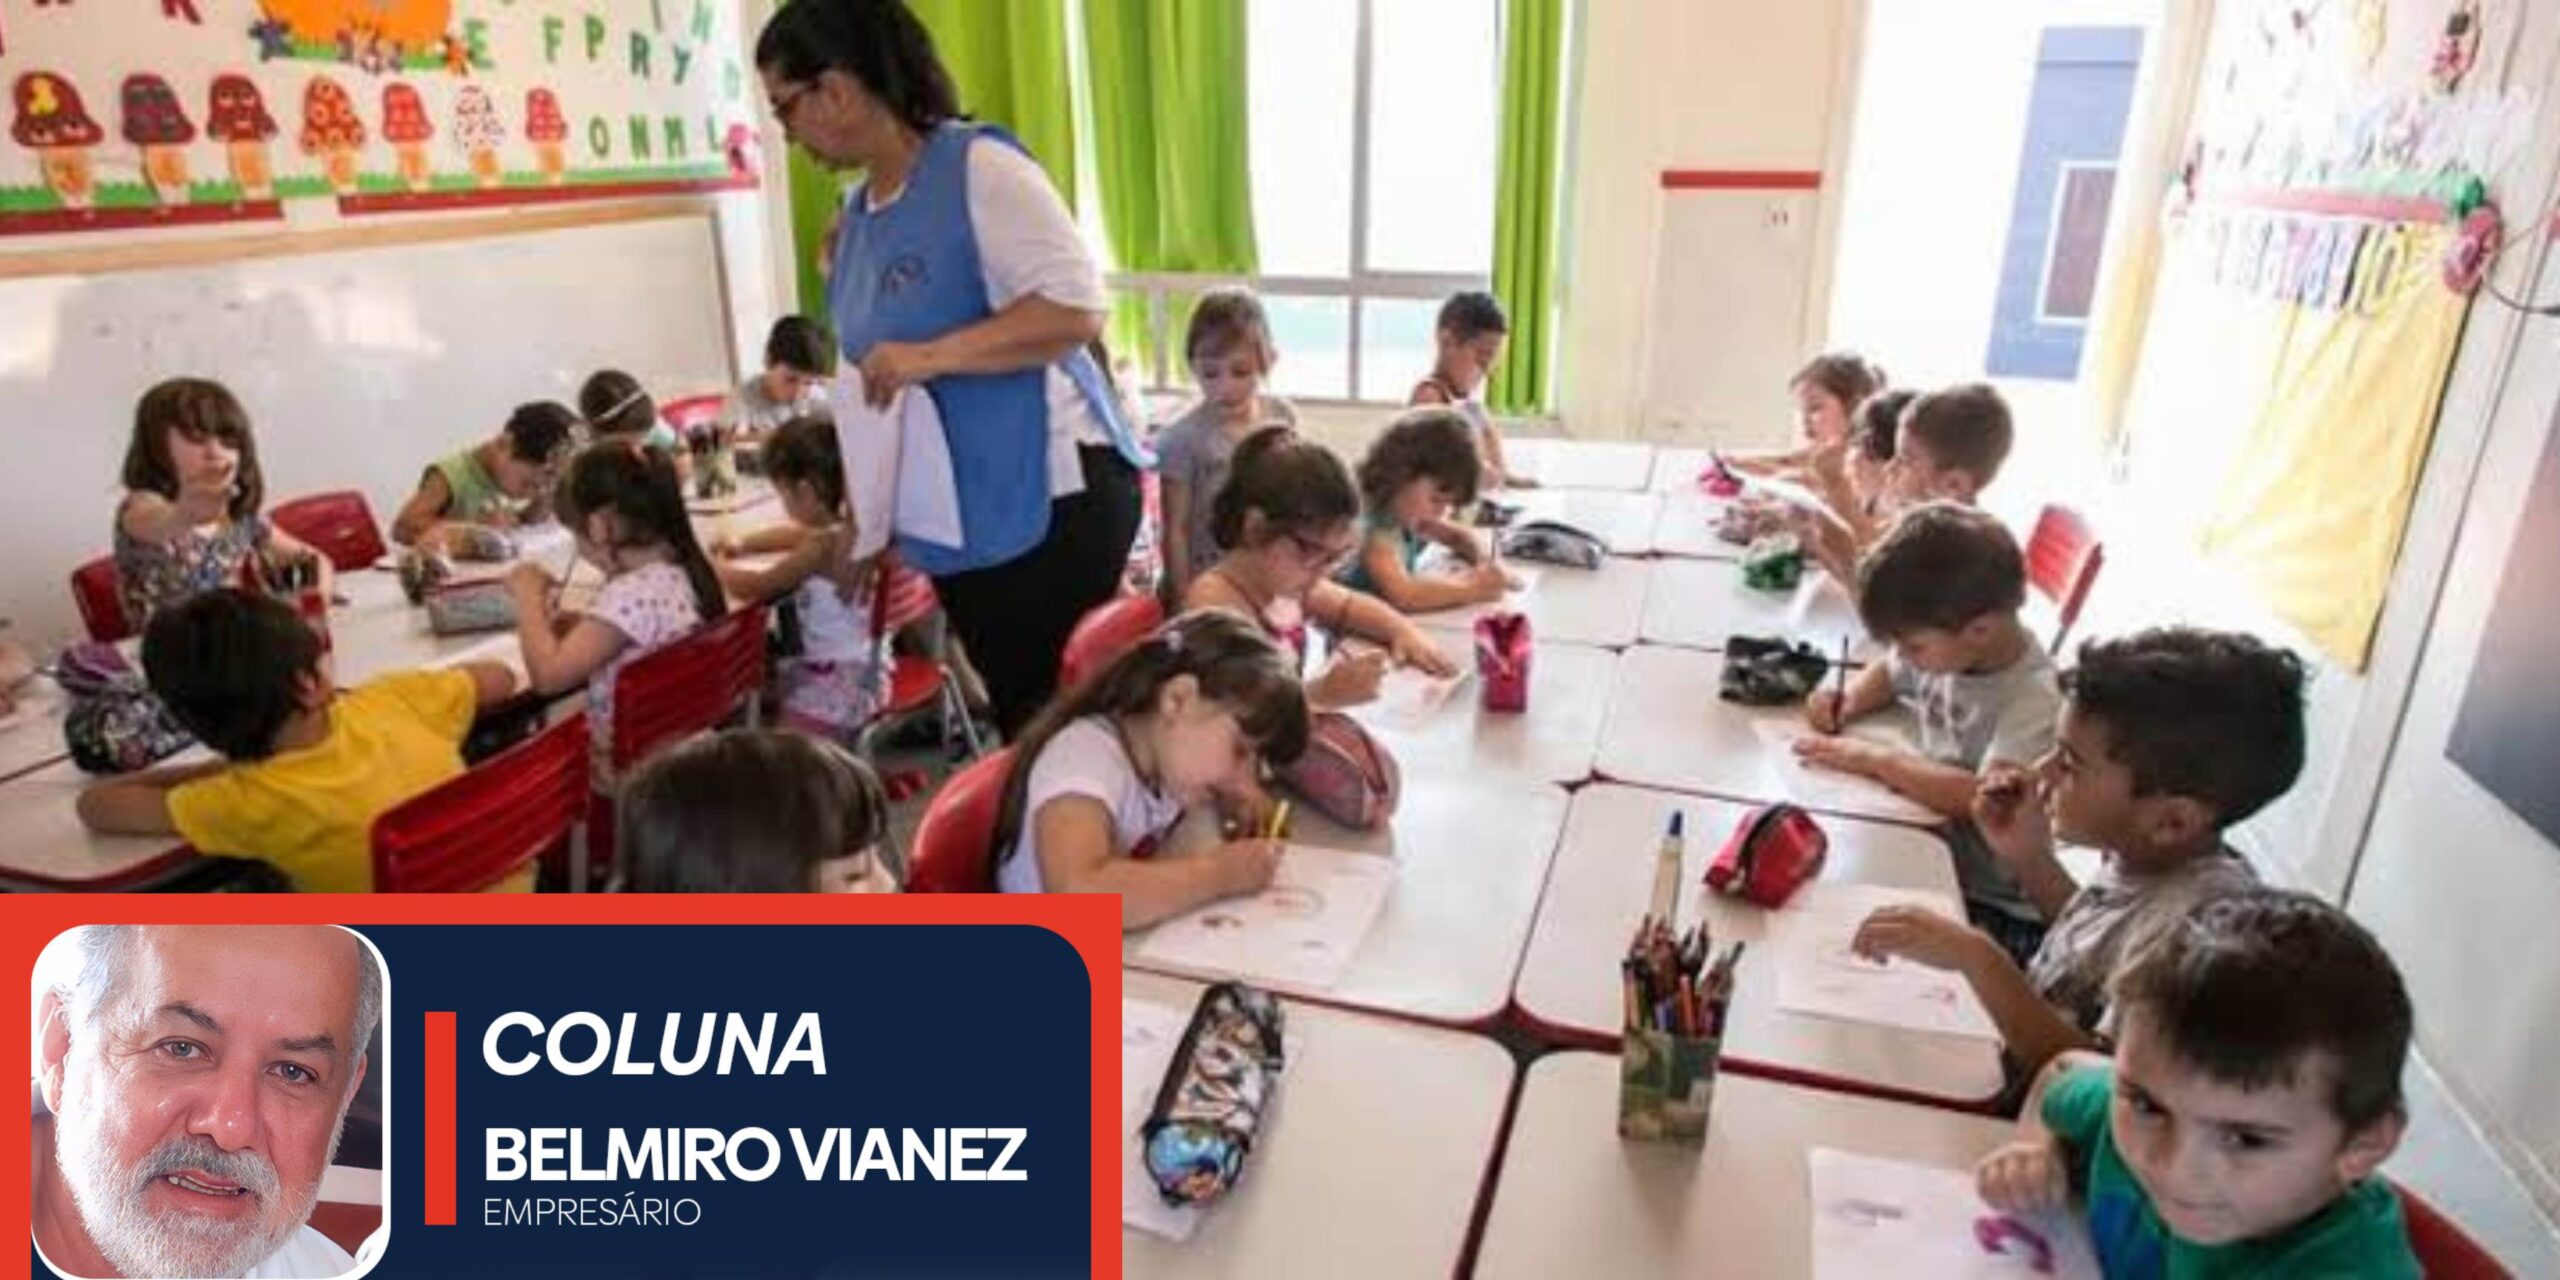 🔶 COLUNA 04 DE BELMIRO VIANEZ | Escola é o lugar sagrado da transformação, não da assombração